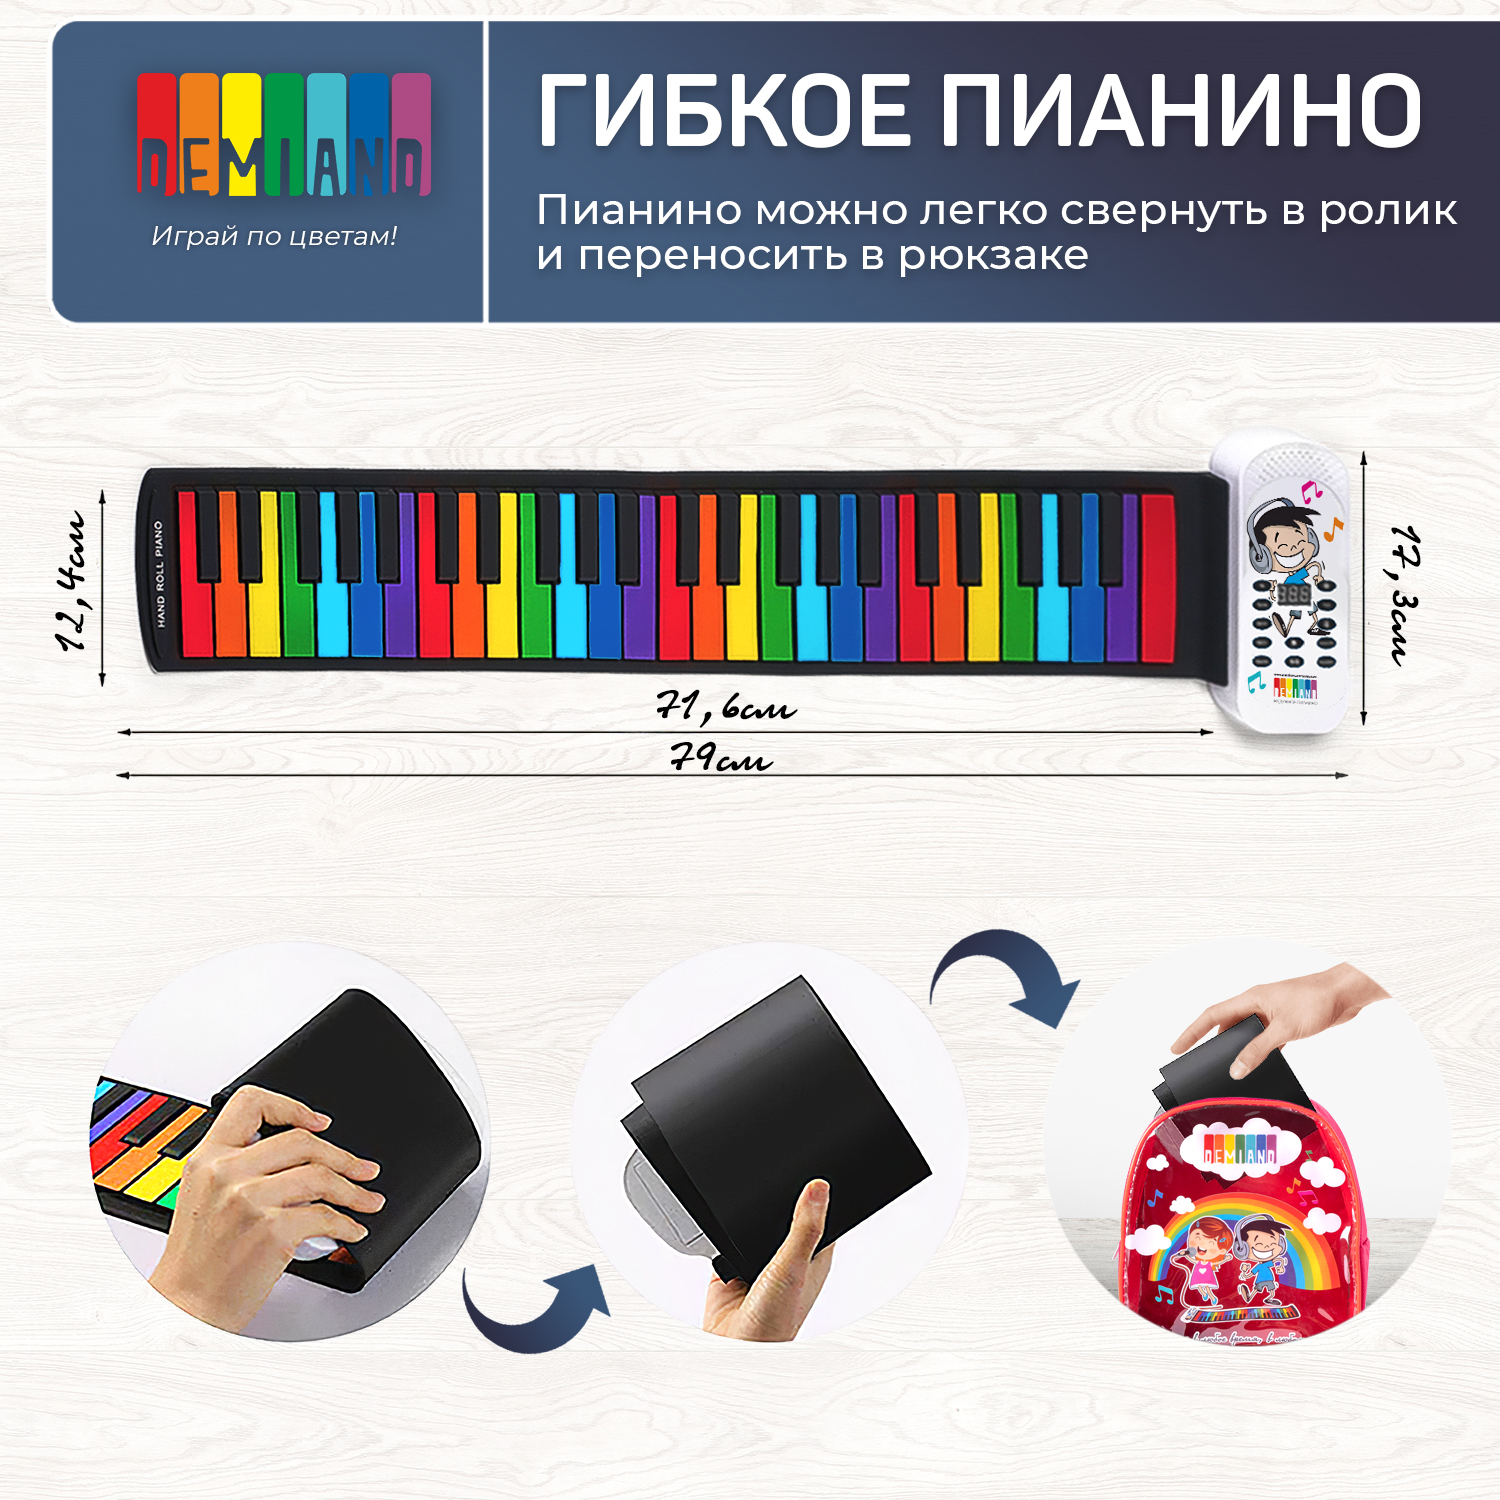 Детское гибкое пианино DEMIAND 49 клавиш нотная книга - фото 8